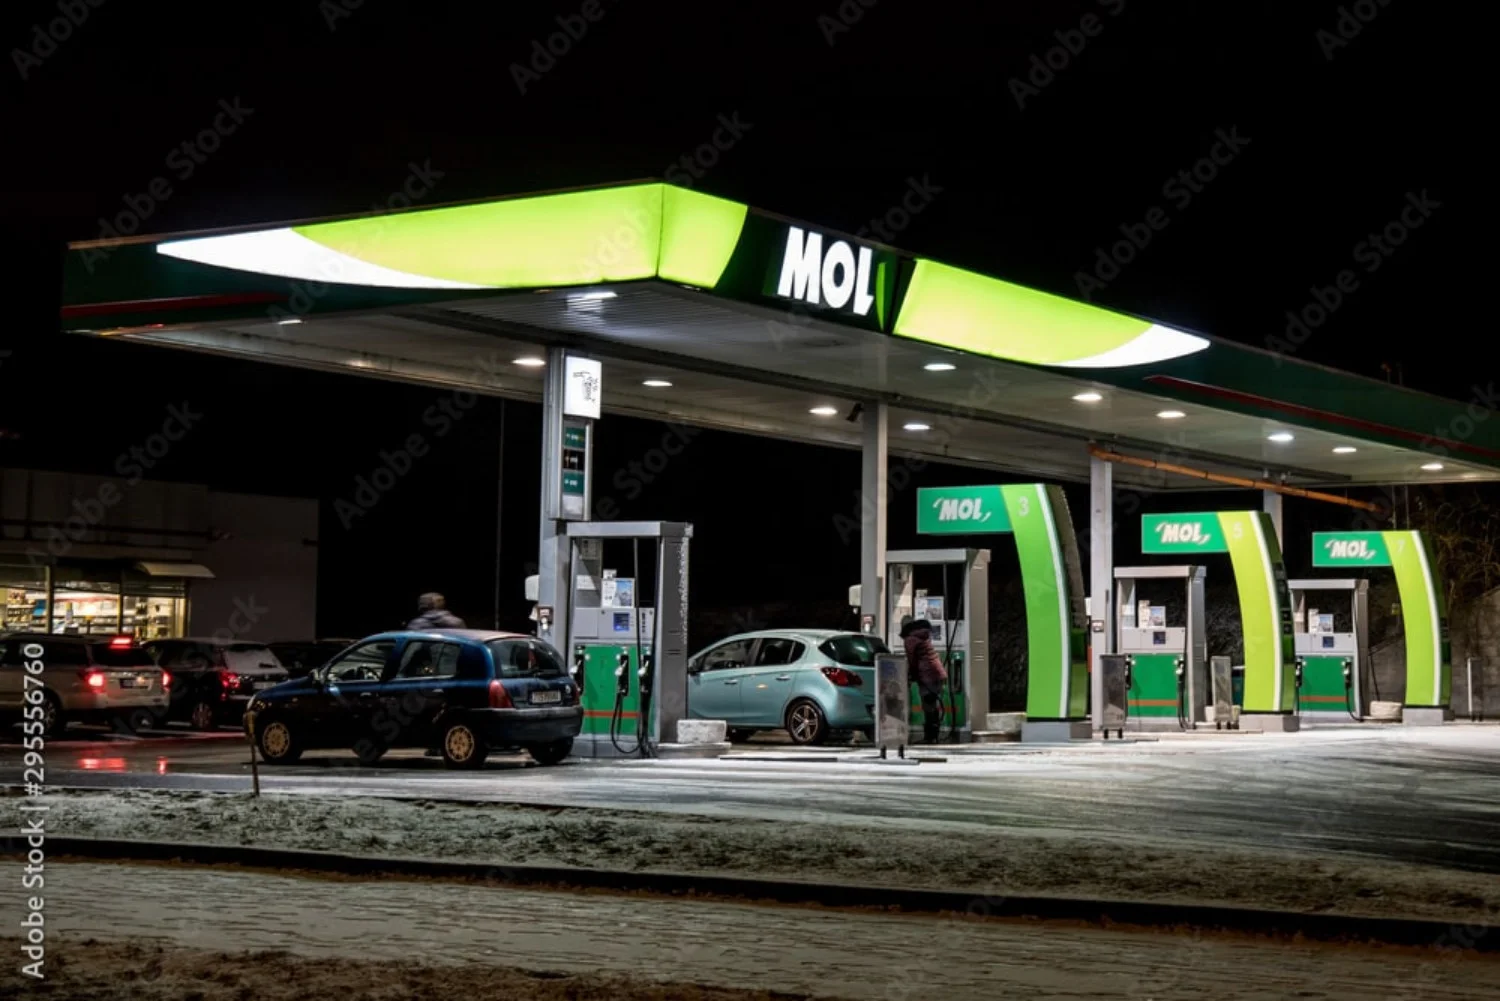 Benzinske postaje MOL nude niz usluga koje dopunjuju opskrbu gorivom, što putovanje cestom čini ugodnijim.